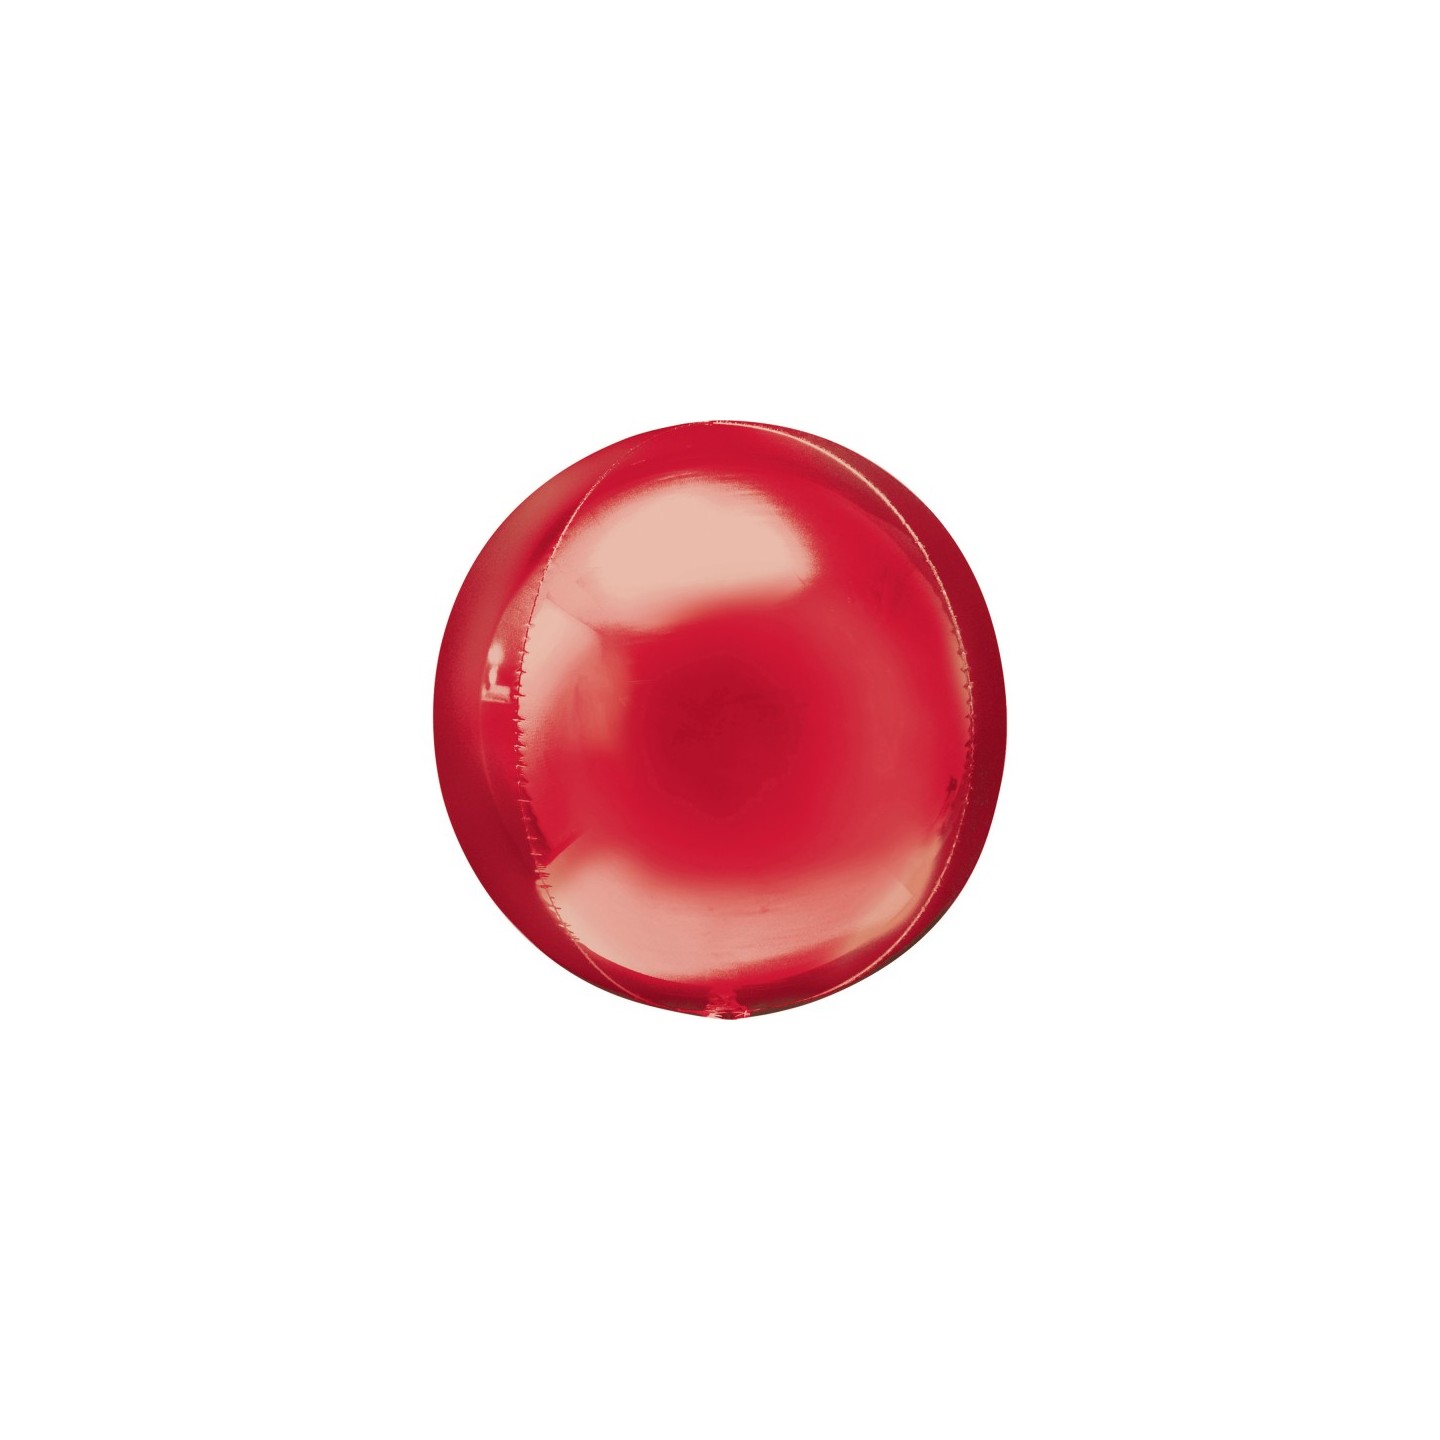 Folieballon onbedrukt orbz rood rond